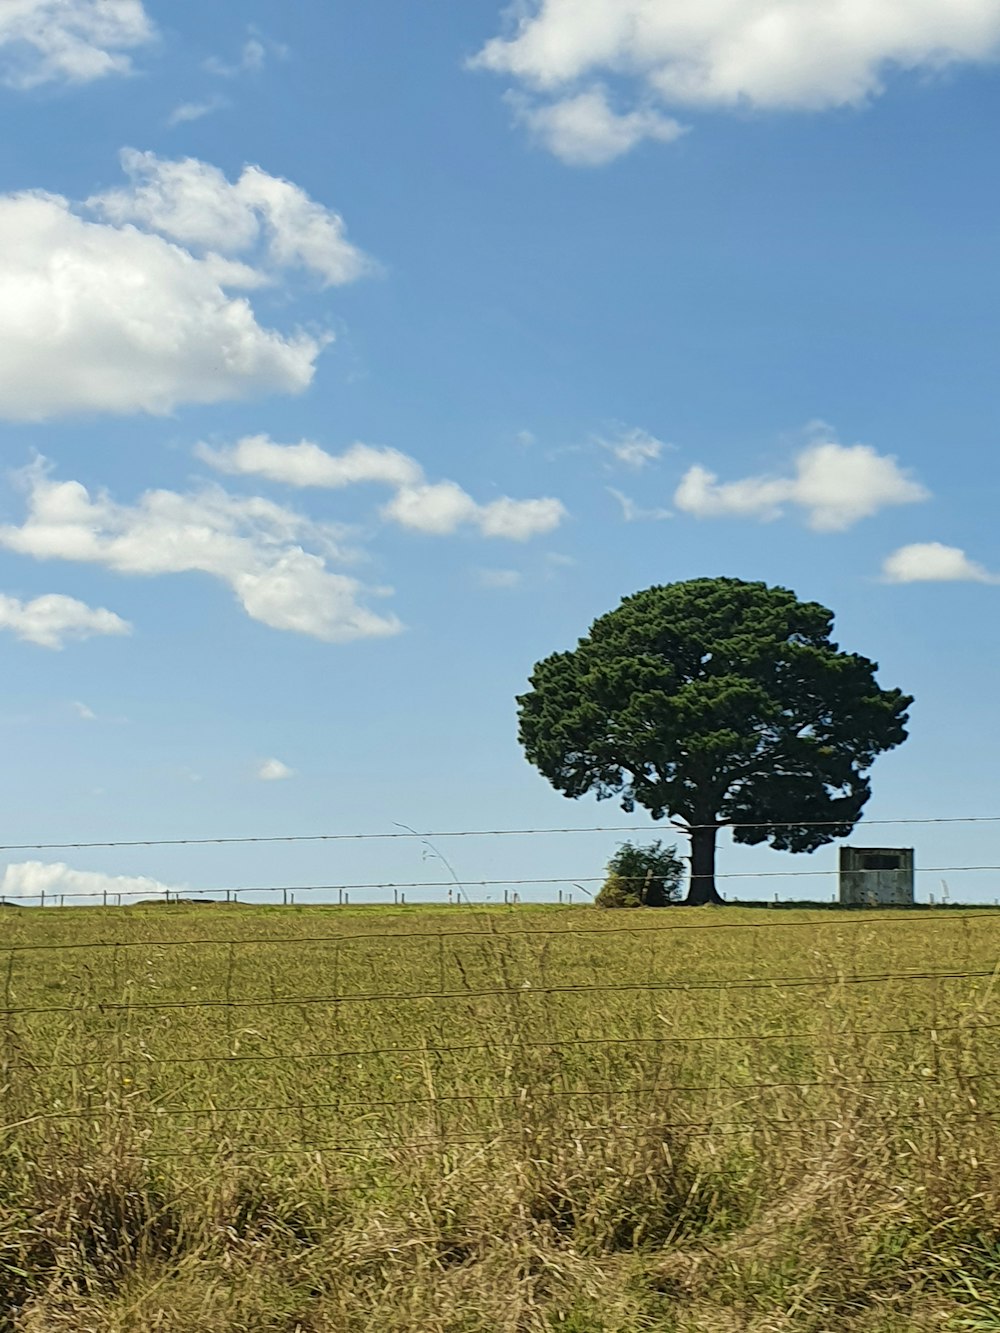 arbre vert au milieu d’un champ d’herbe brune sous un ciel bleu pendant la journée